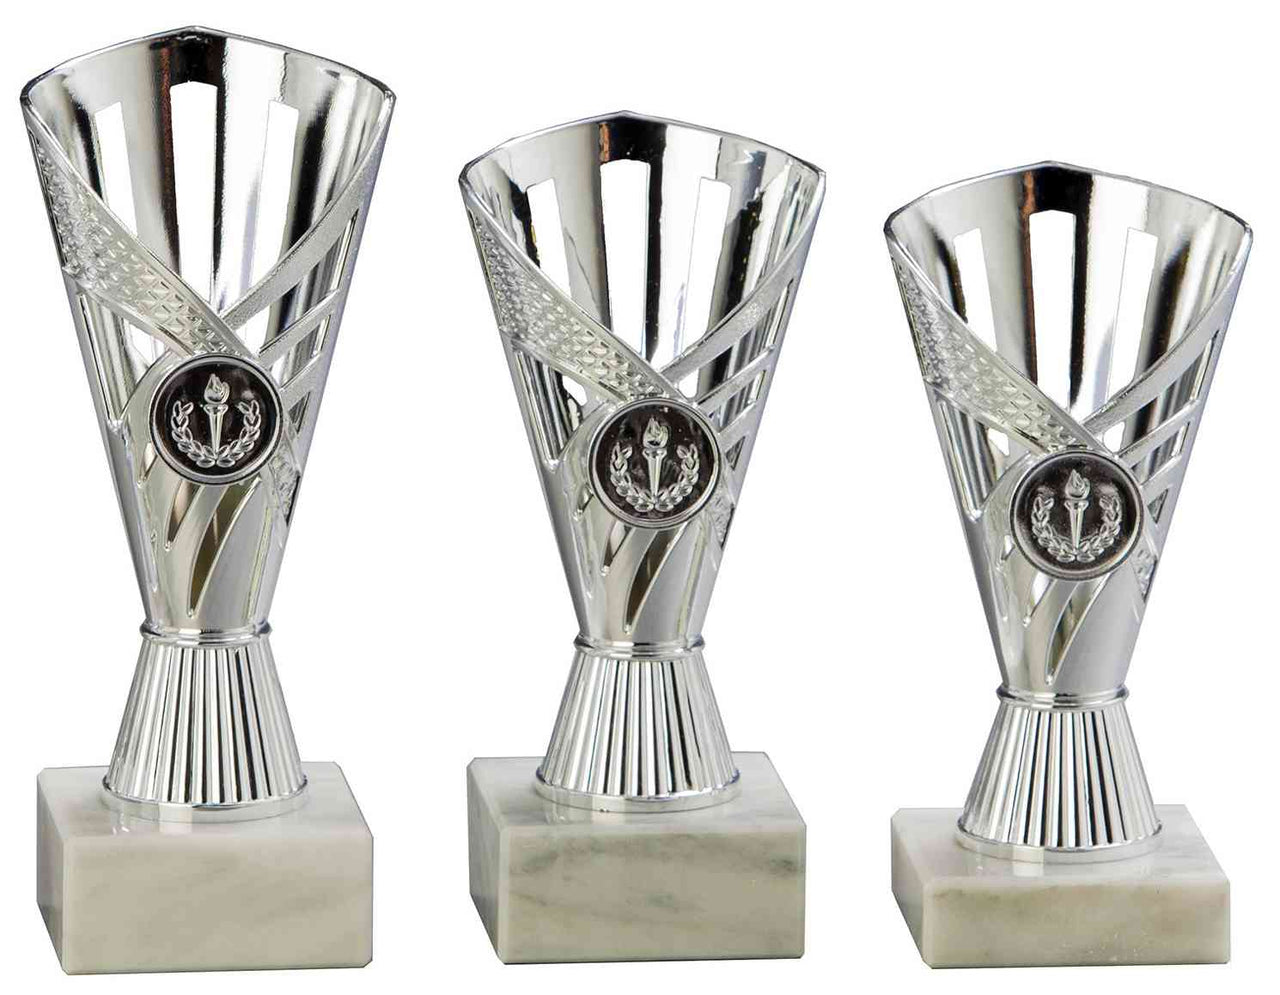 Drei silberne Pokale Grevenbroich 3-er Pokalserie 160 mm – 190 mm PK759160-3-E25 in verschiedenen Größen mit dekorativen Mustern und Marmorsockeln, isoliert auf weißem Hintergrund.